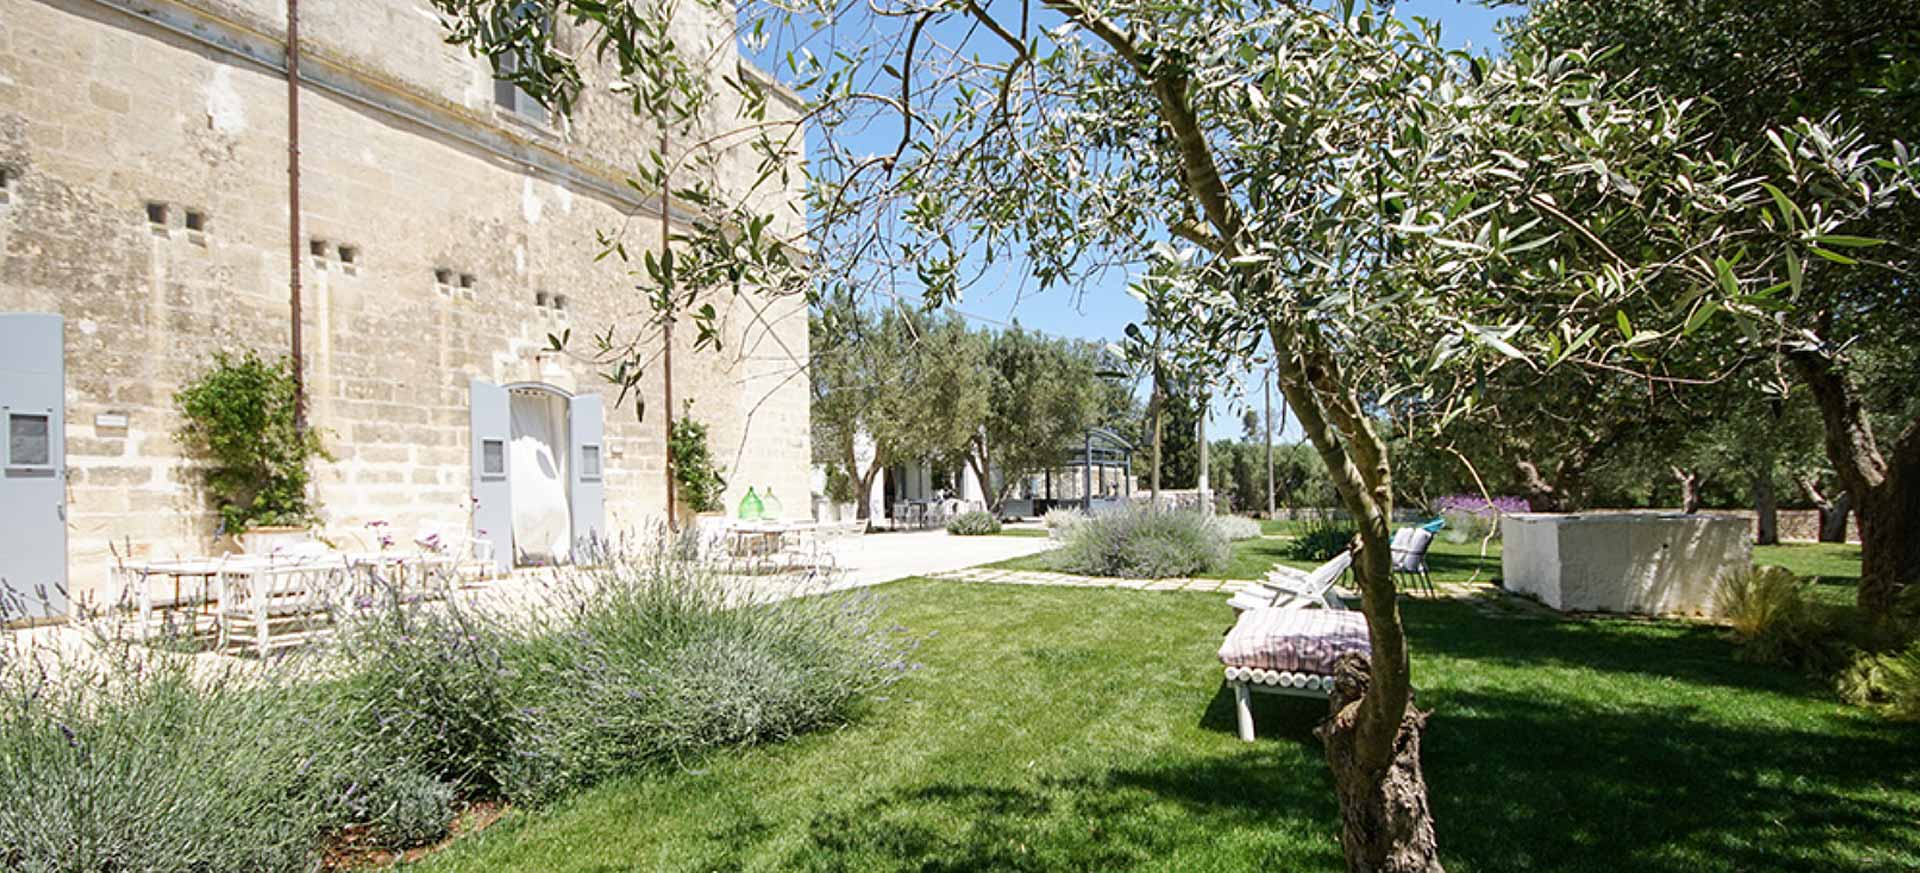 Maison d`hôte Torre dell`Orso - Lecce - 